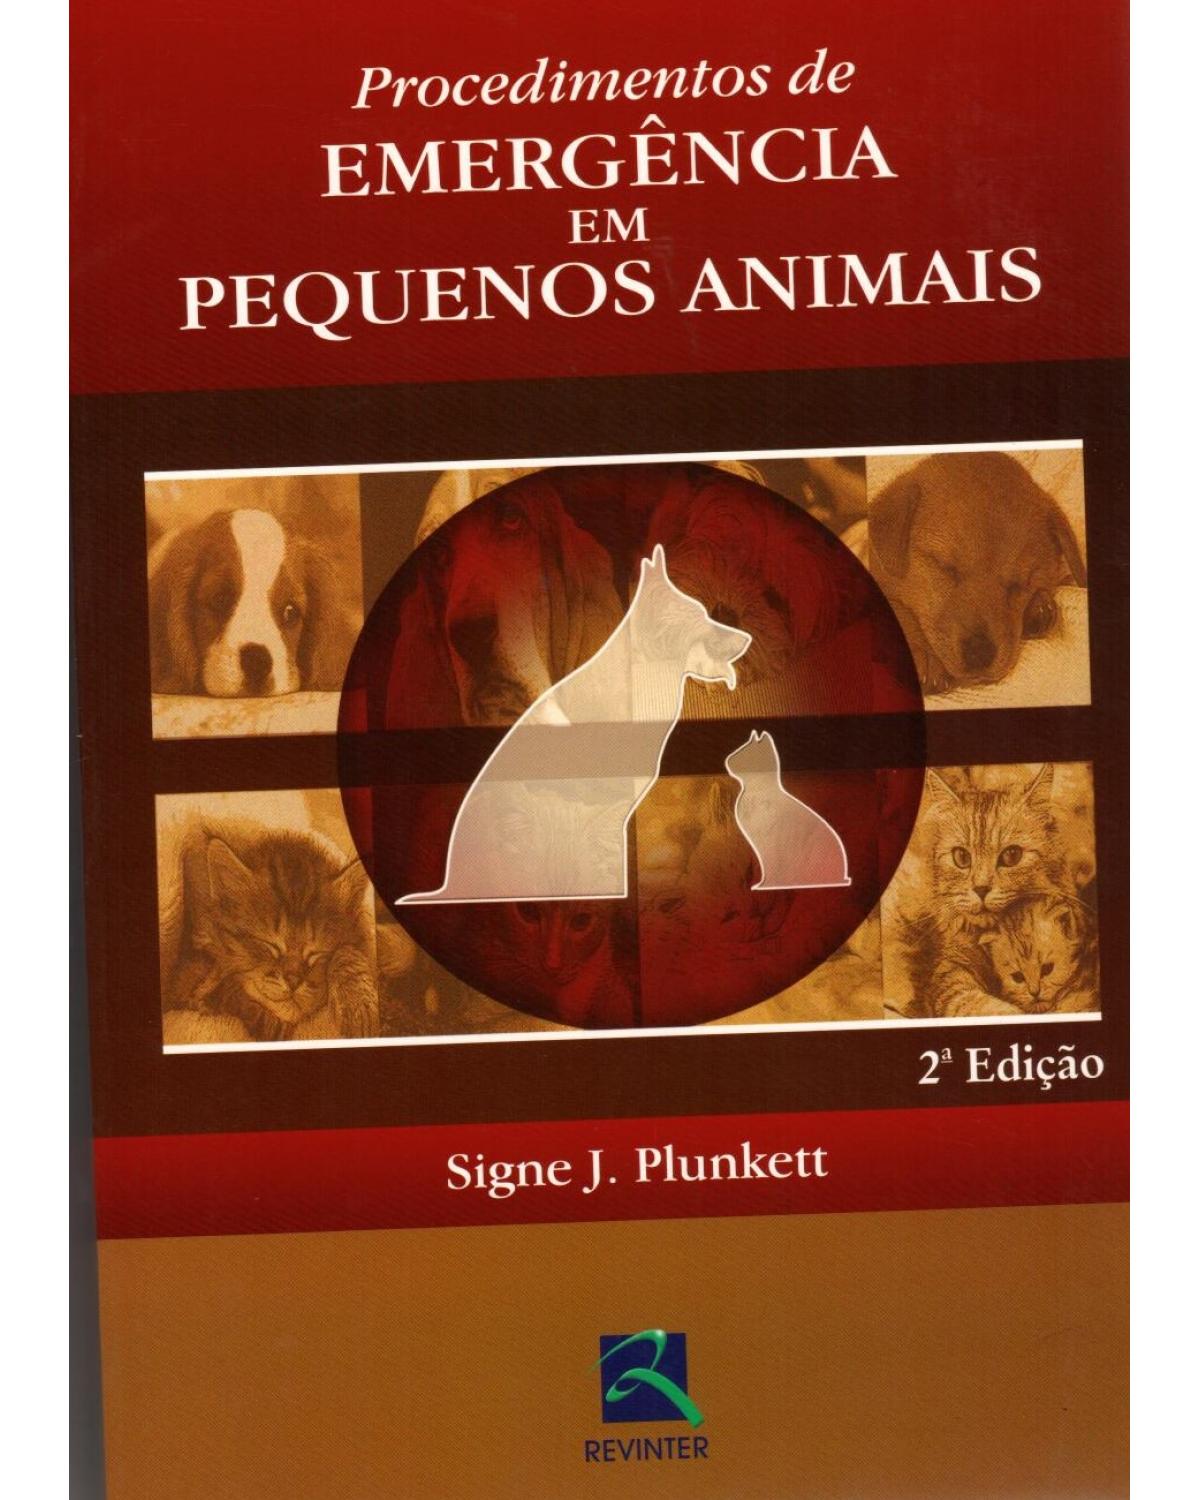 Procedimentos de emergência em pequenos animais - 2ª Edição | 2006